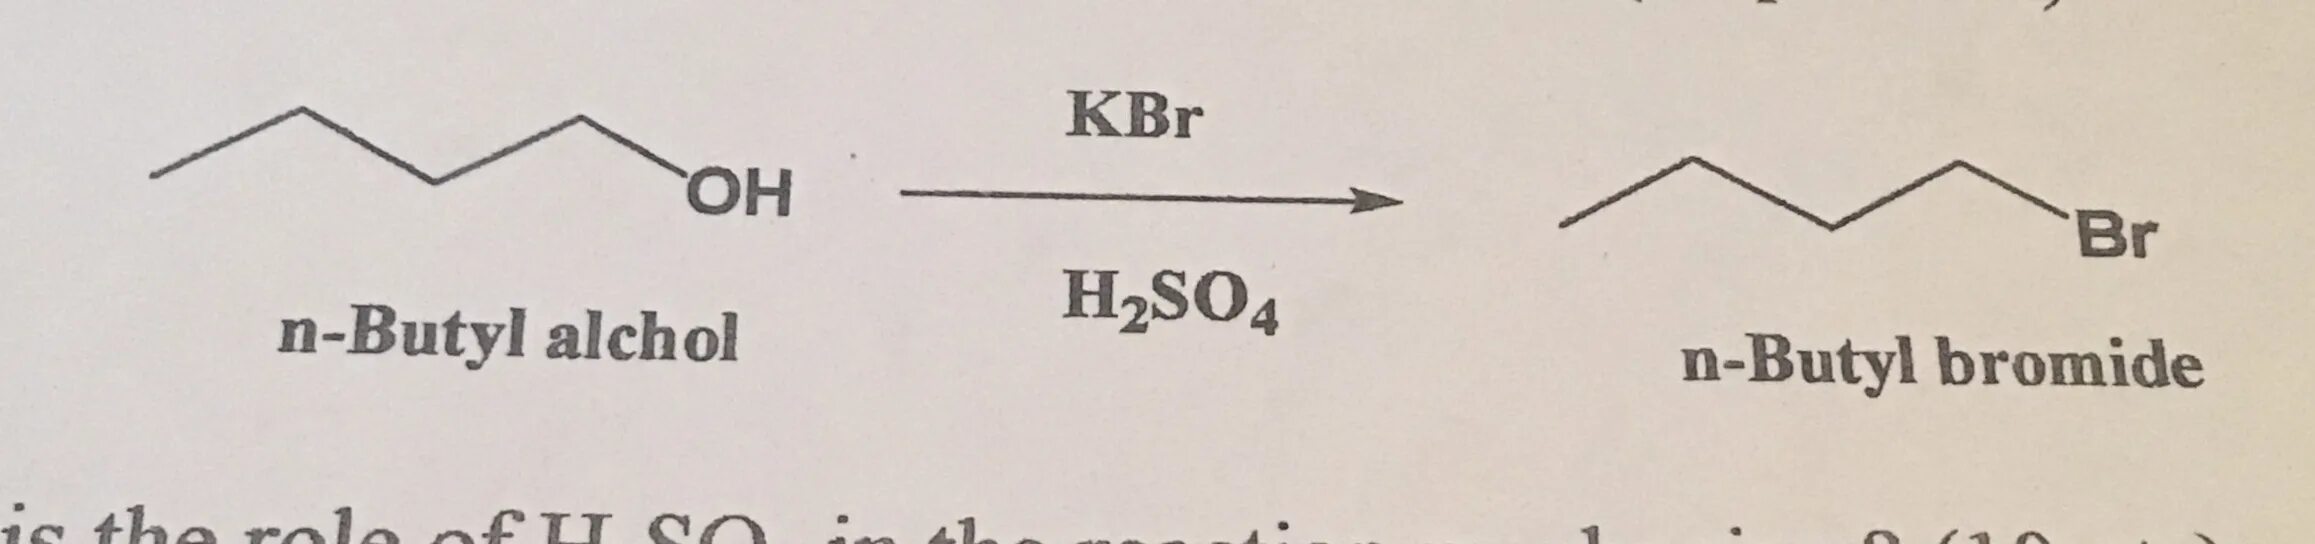 Kbr hcl. KBR h2so4 конц. Этанол h2so4. Этанол+ h2so4.